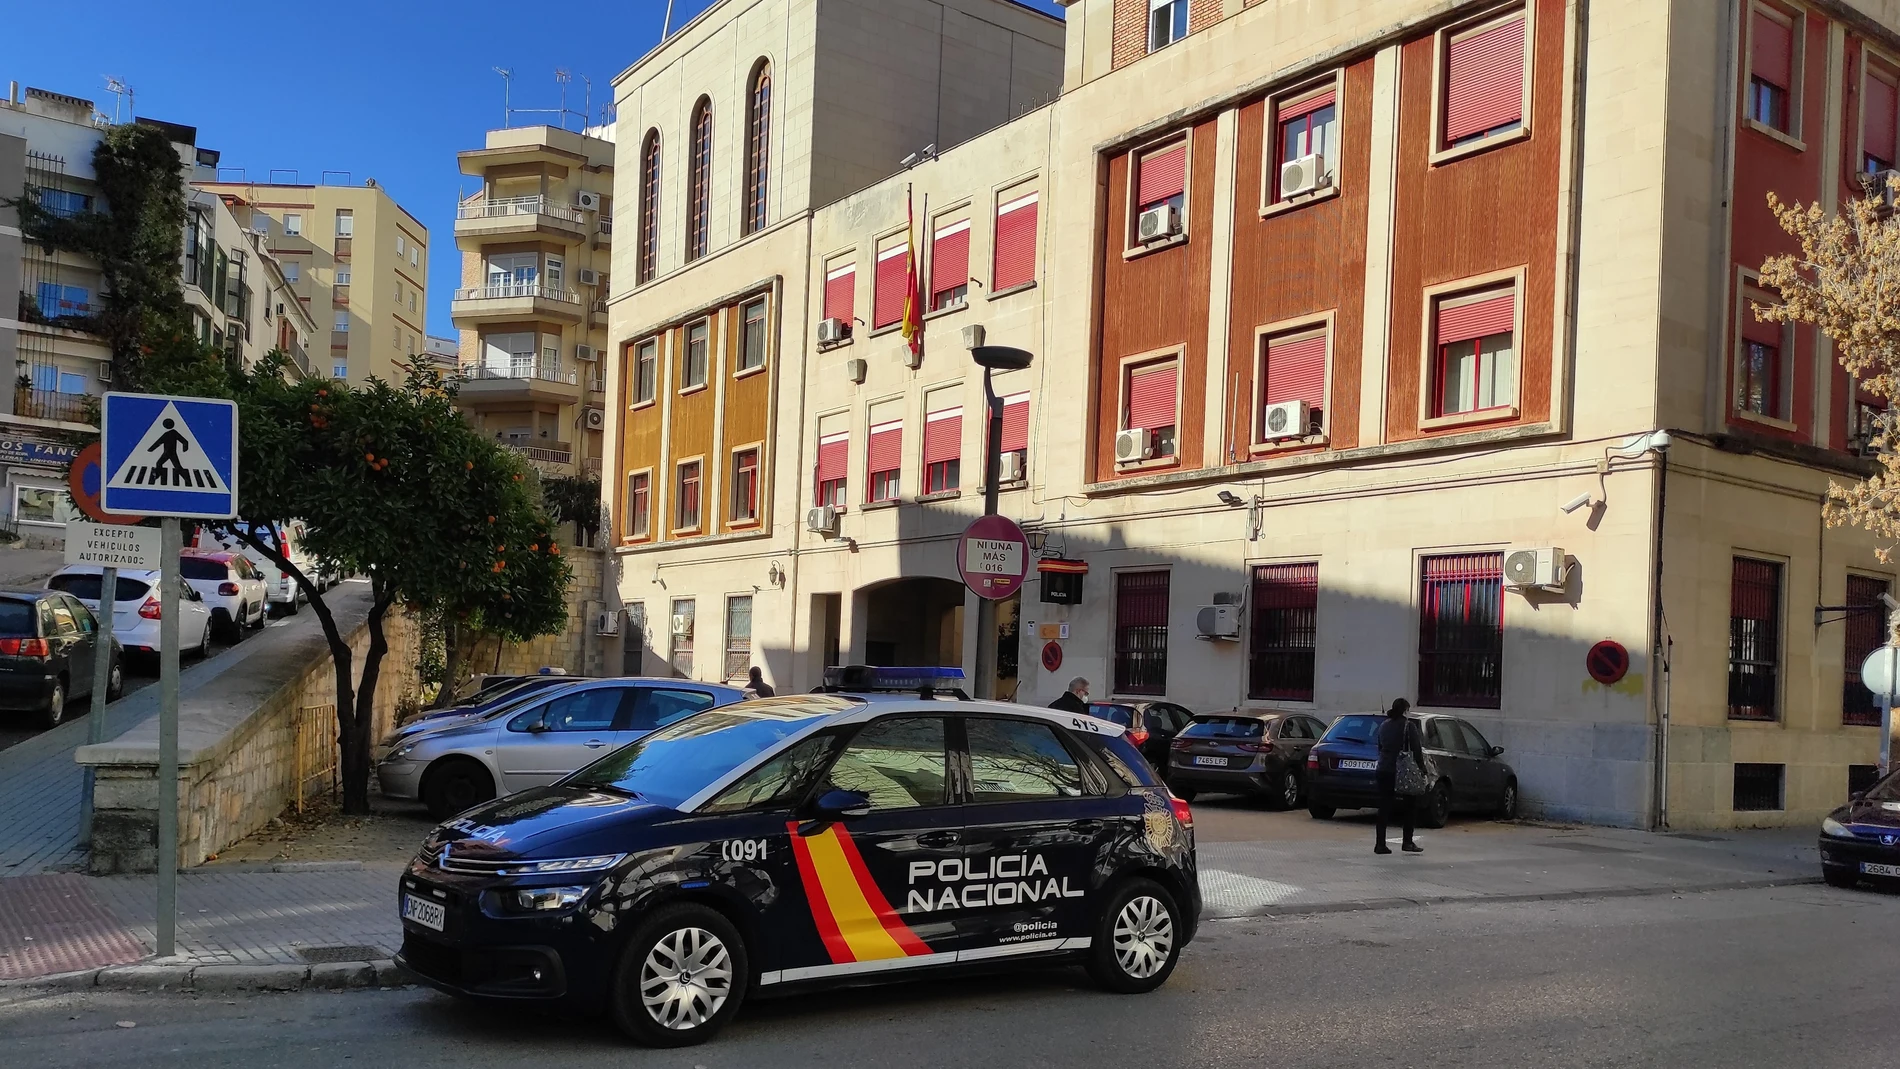  Comisaría de la Policía Nacional en Jaén